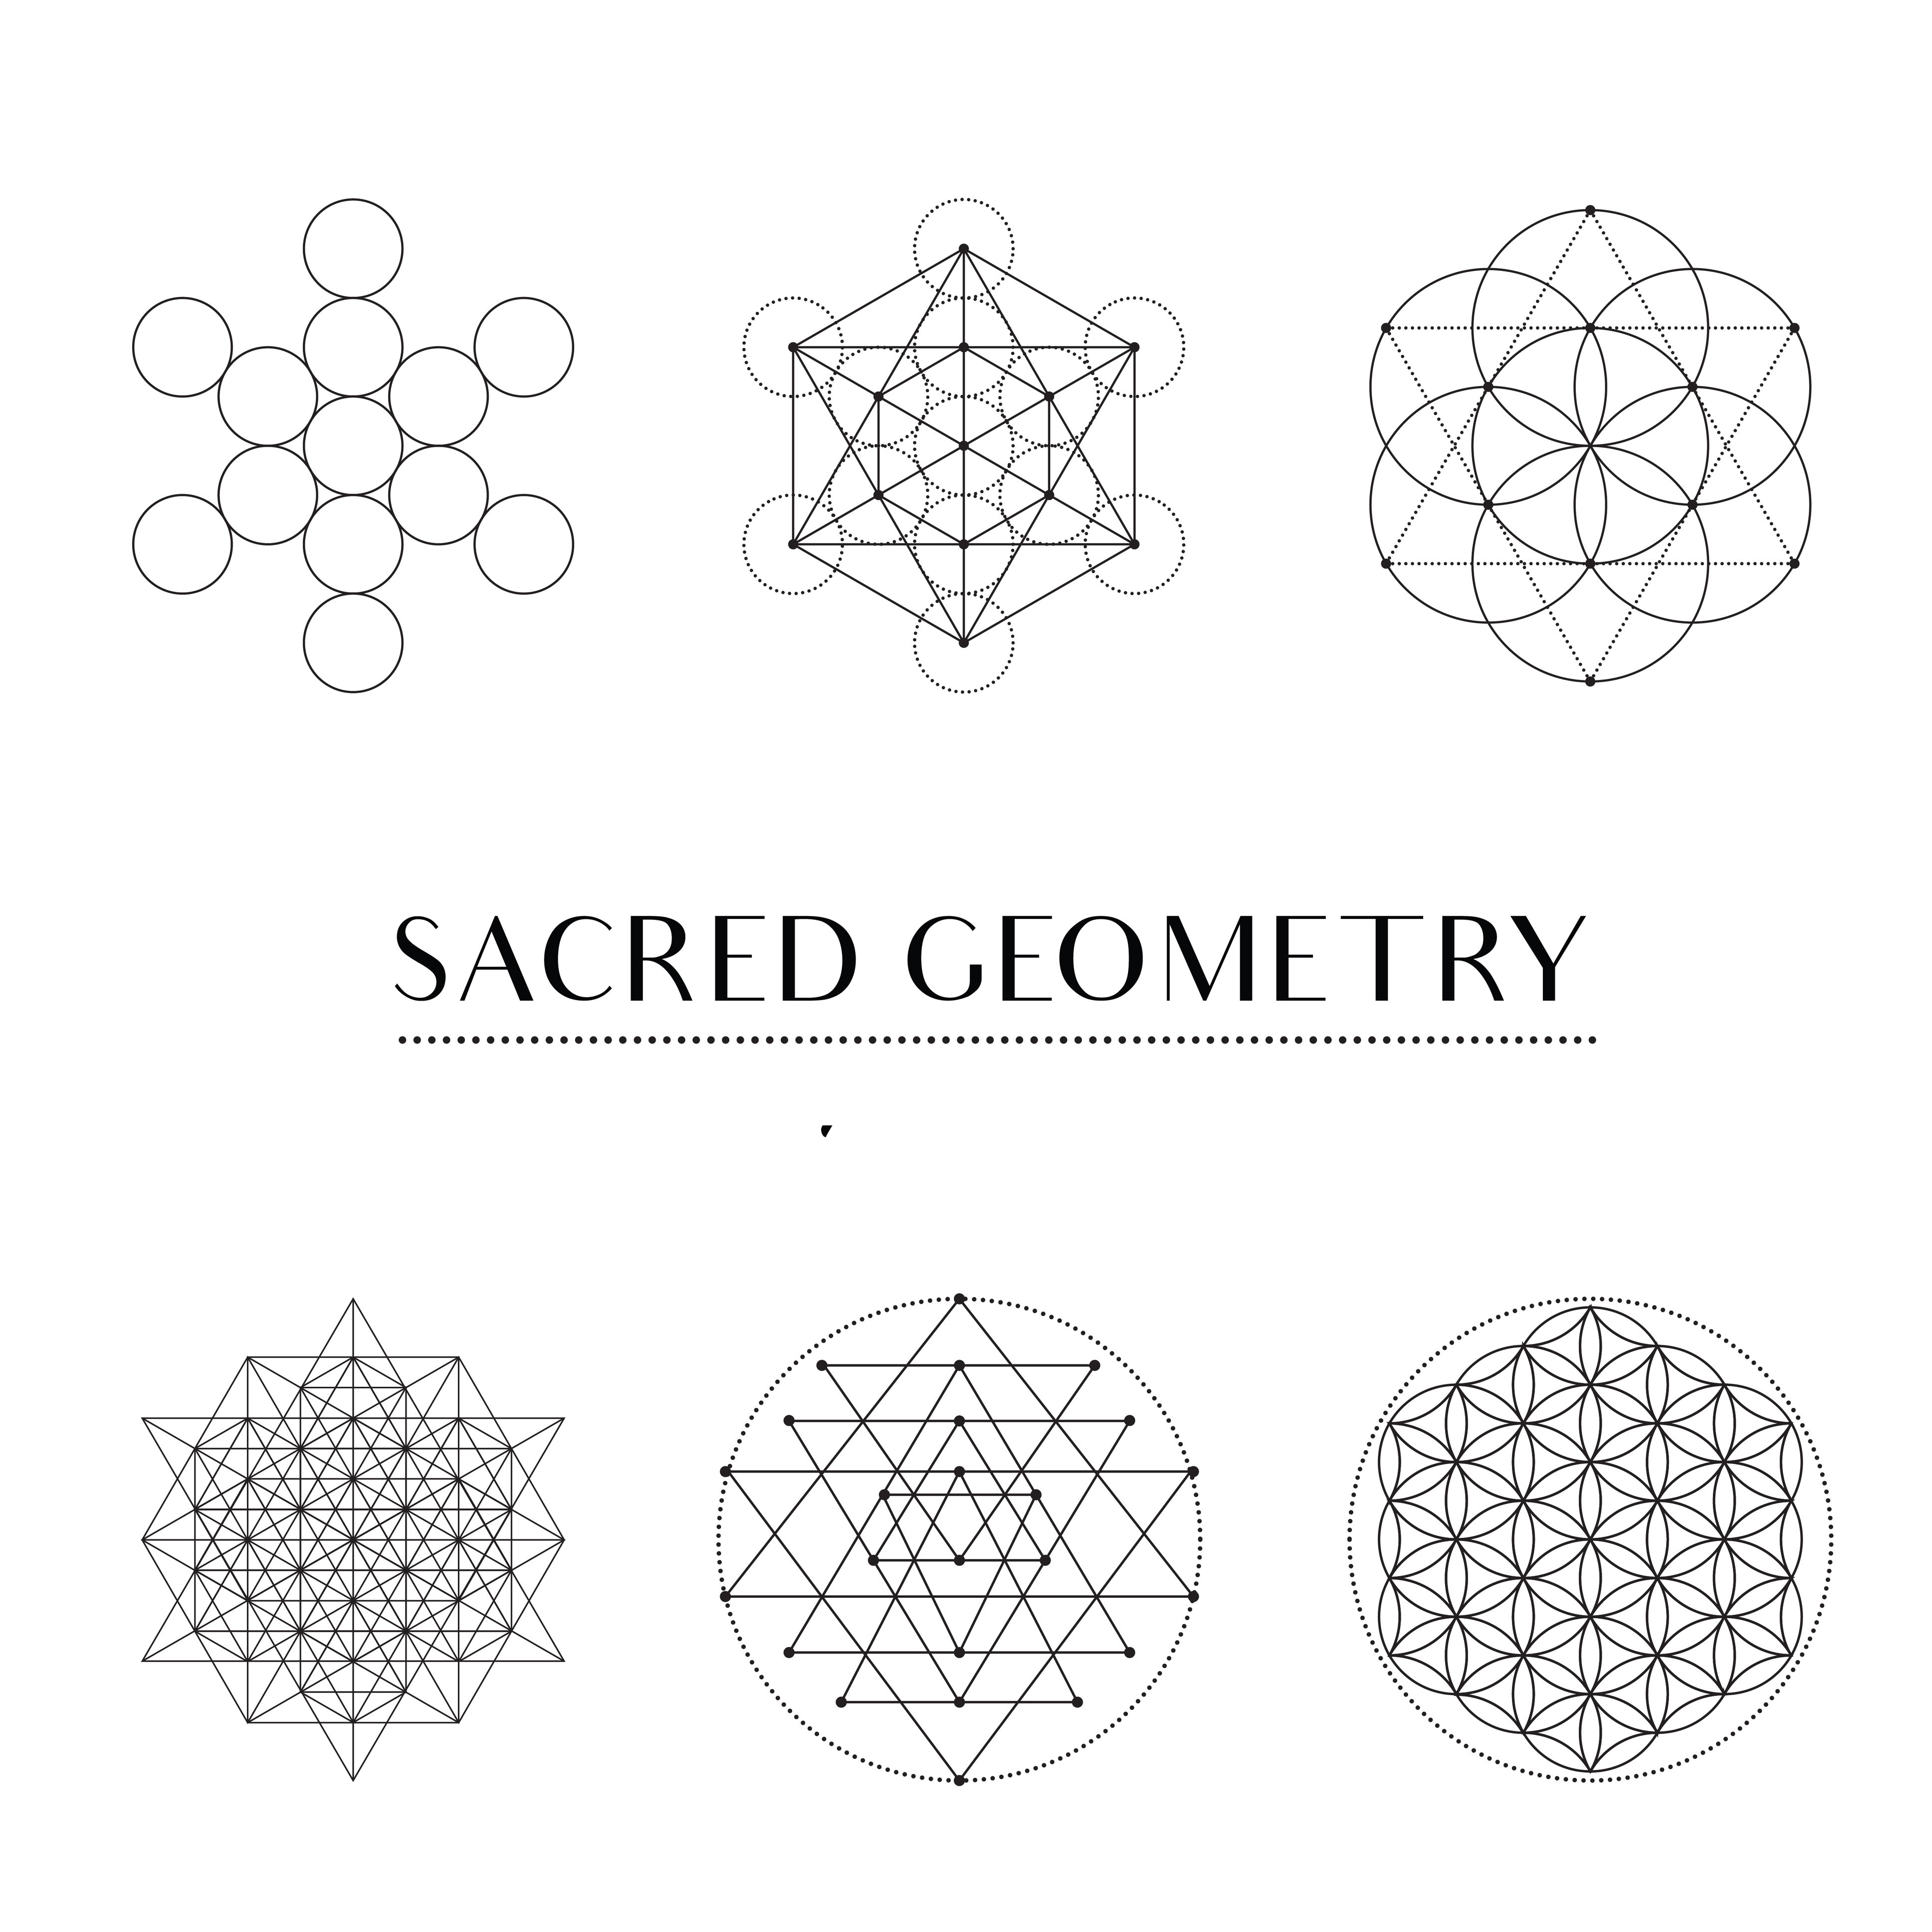 Sacred Geometry Workshop